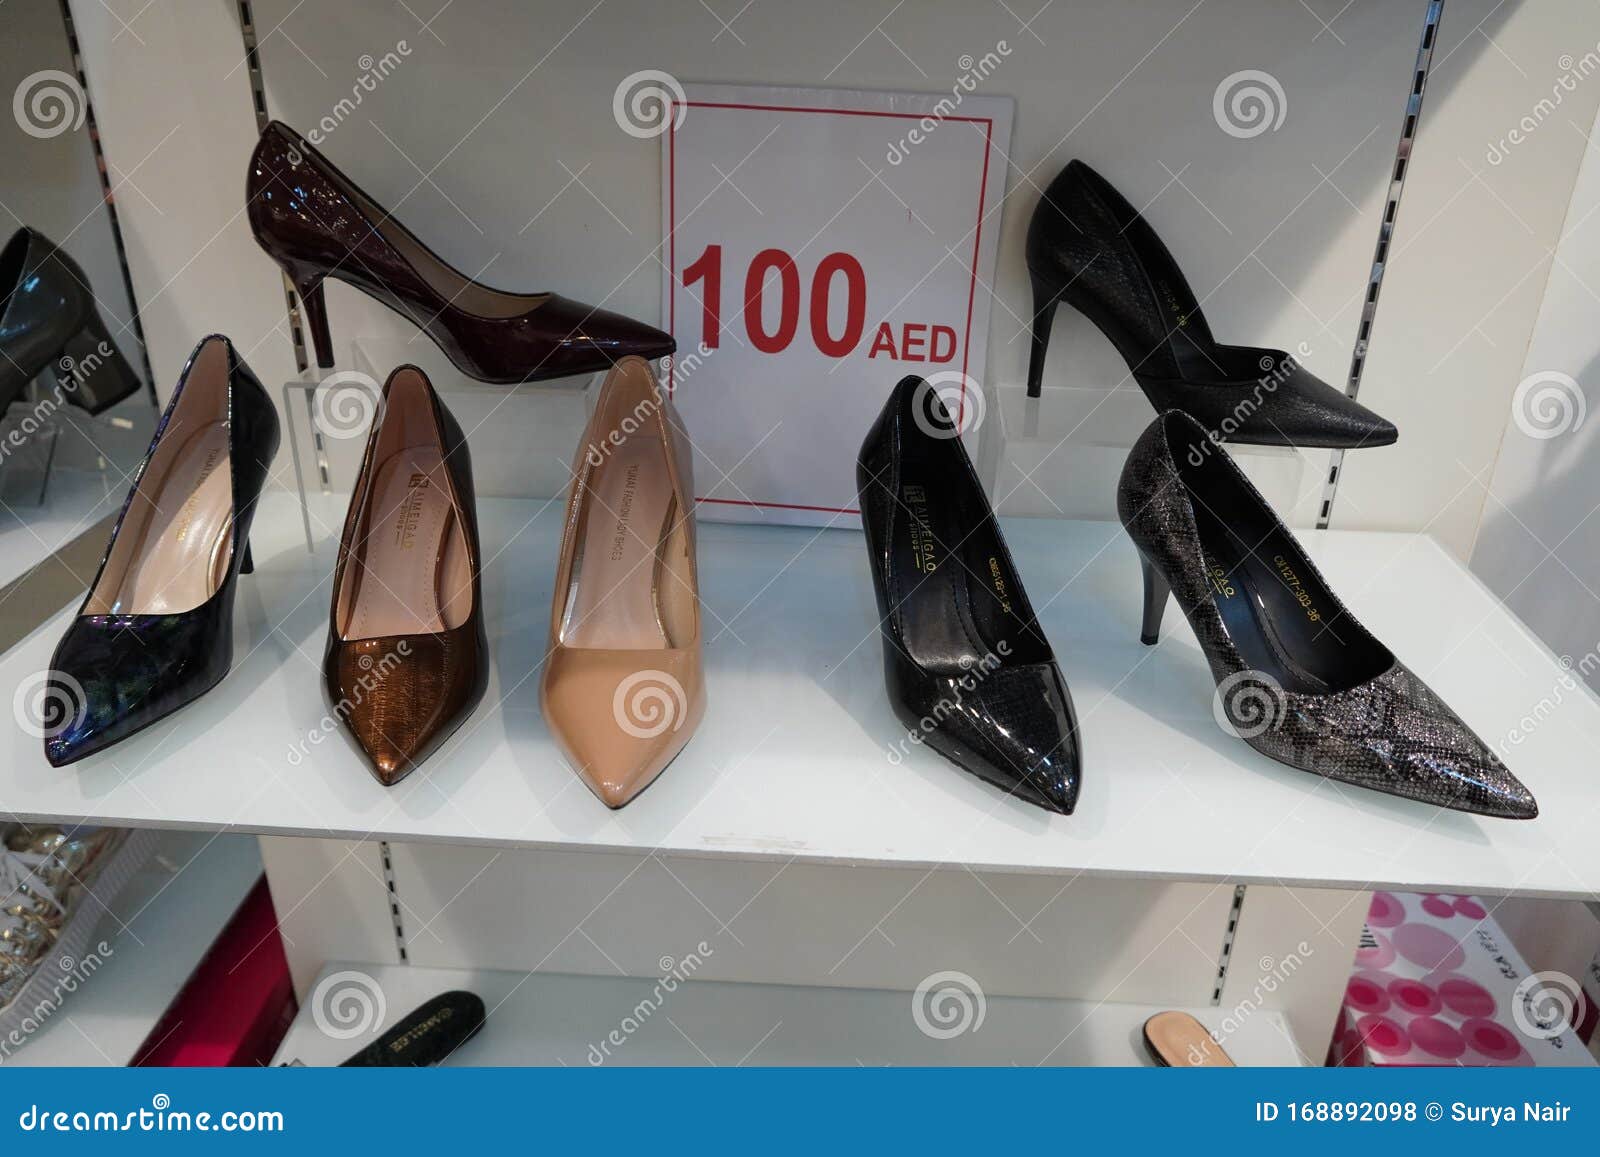 heels shoes shop